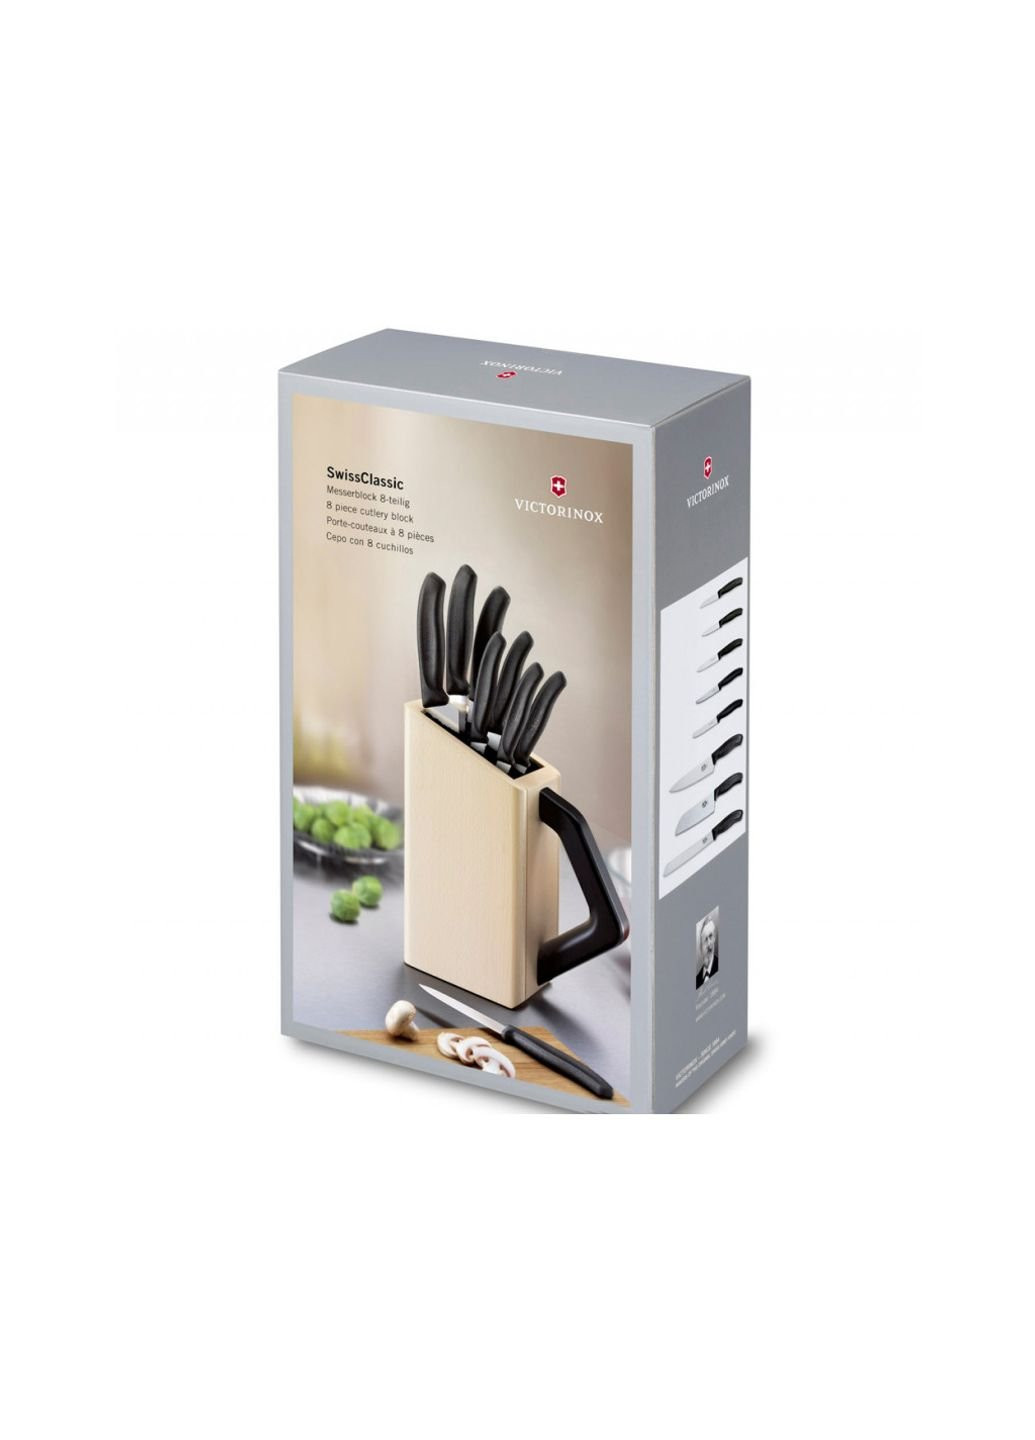 Набор ножей SwissClassic Cutlery Block 8 шт (6.7173.8) Victorinox чёрные,